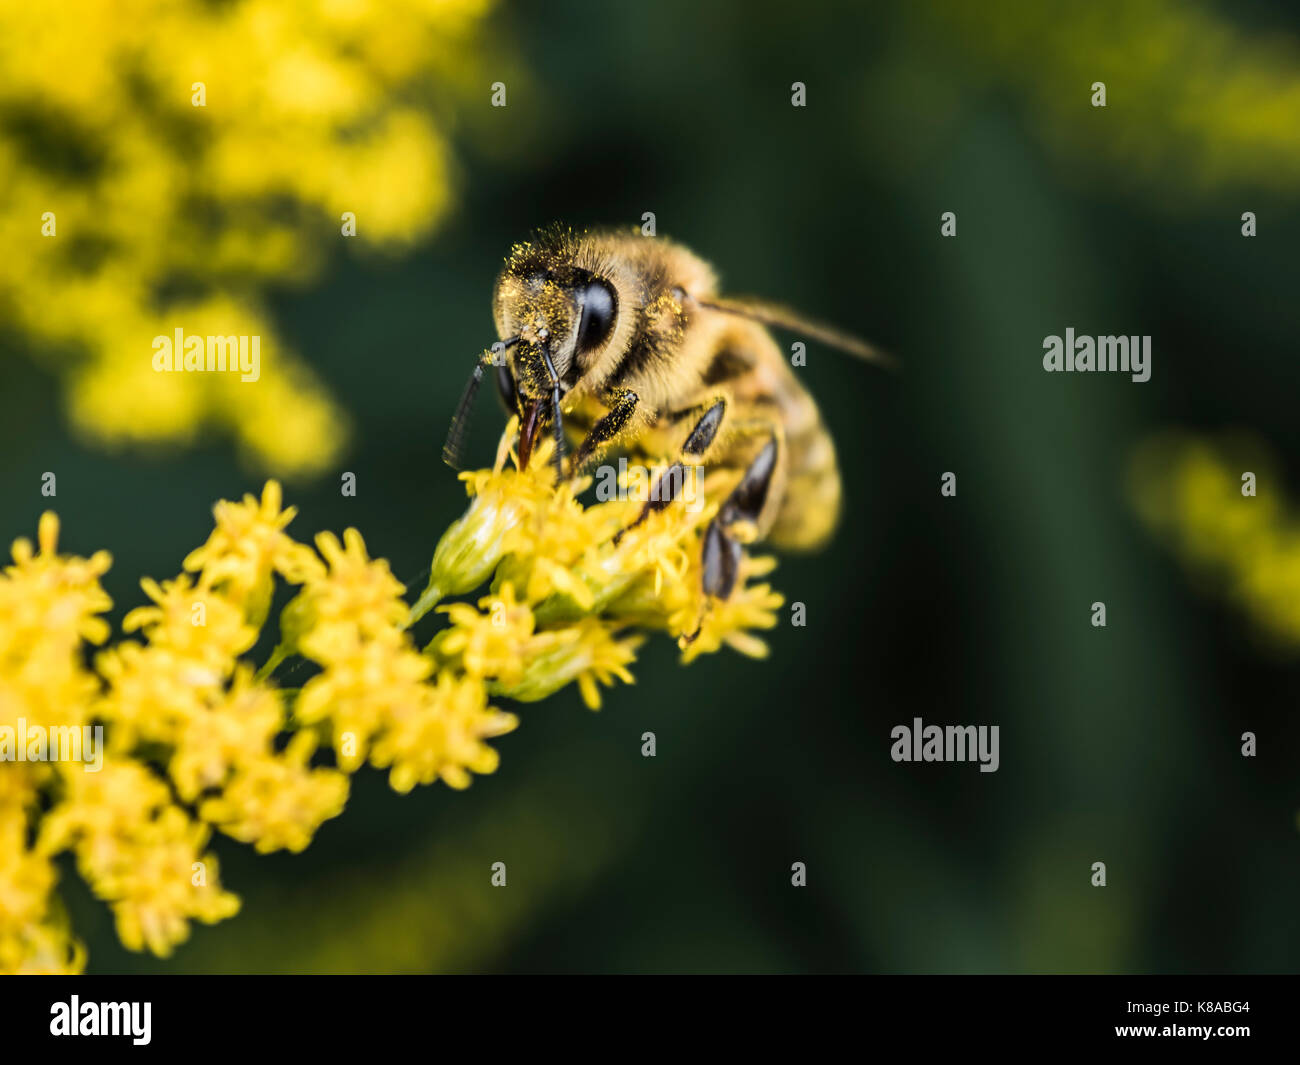 Impollinatori. Honey Bee impollinare piccolo fiore giallo. vista macro. fotografia di close-up. sfondo verde. Foto Stock